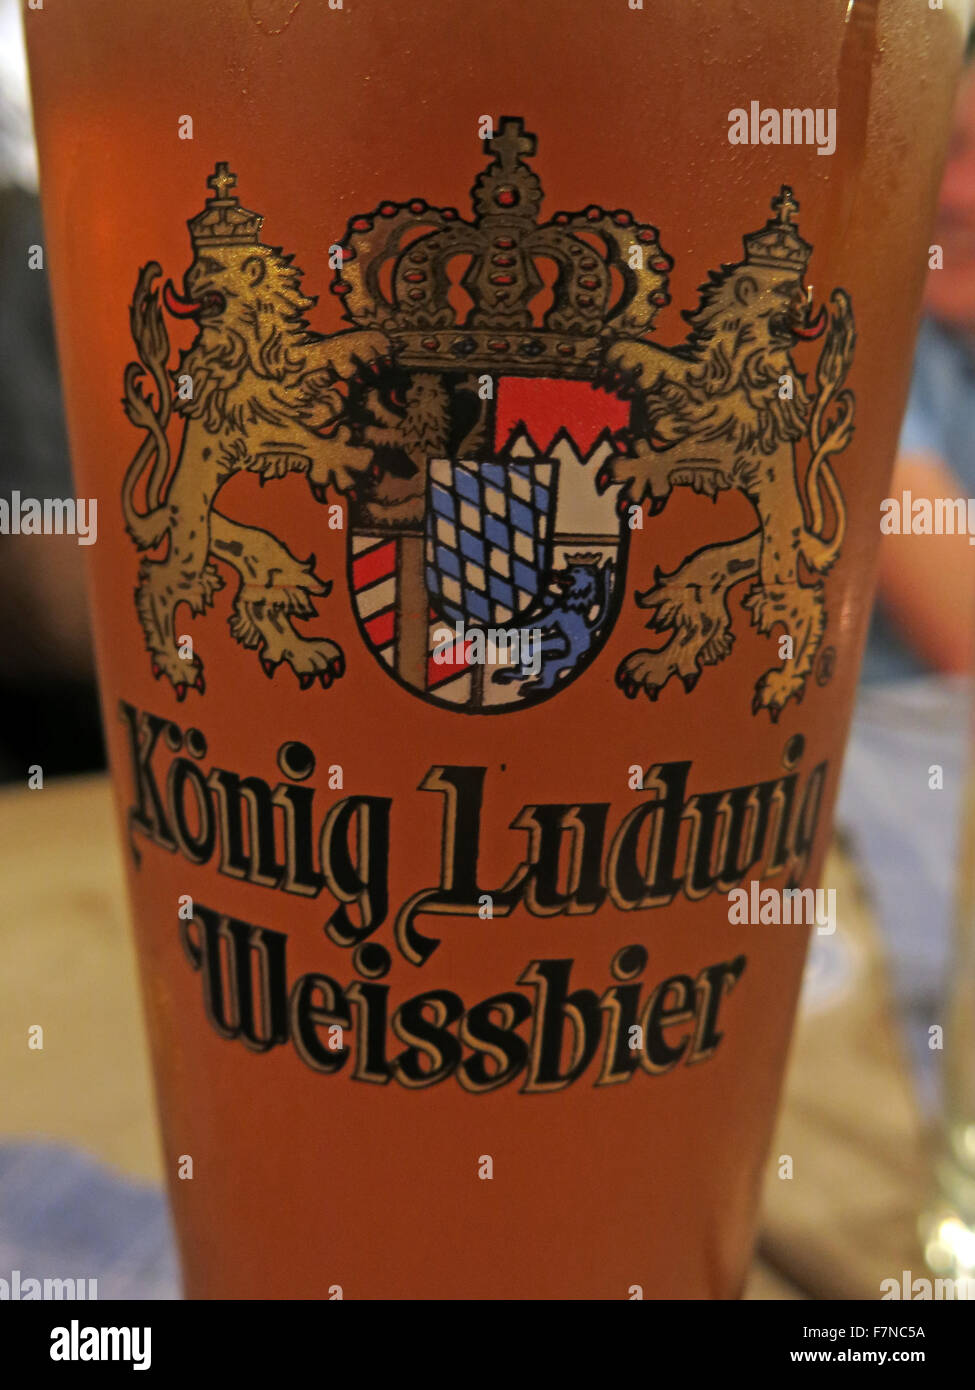 Un verre de konig Ludwig Weissbier, Munich, Allemagne Banque D'Images